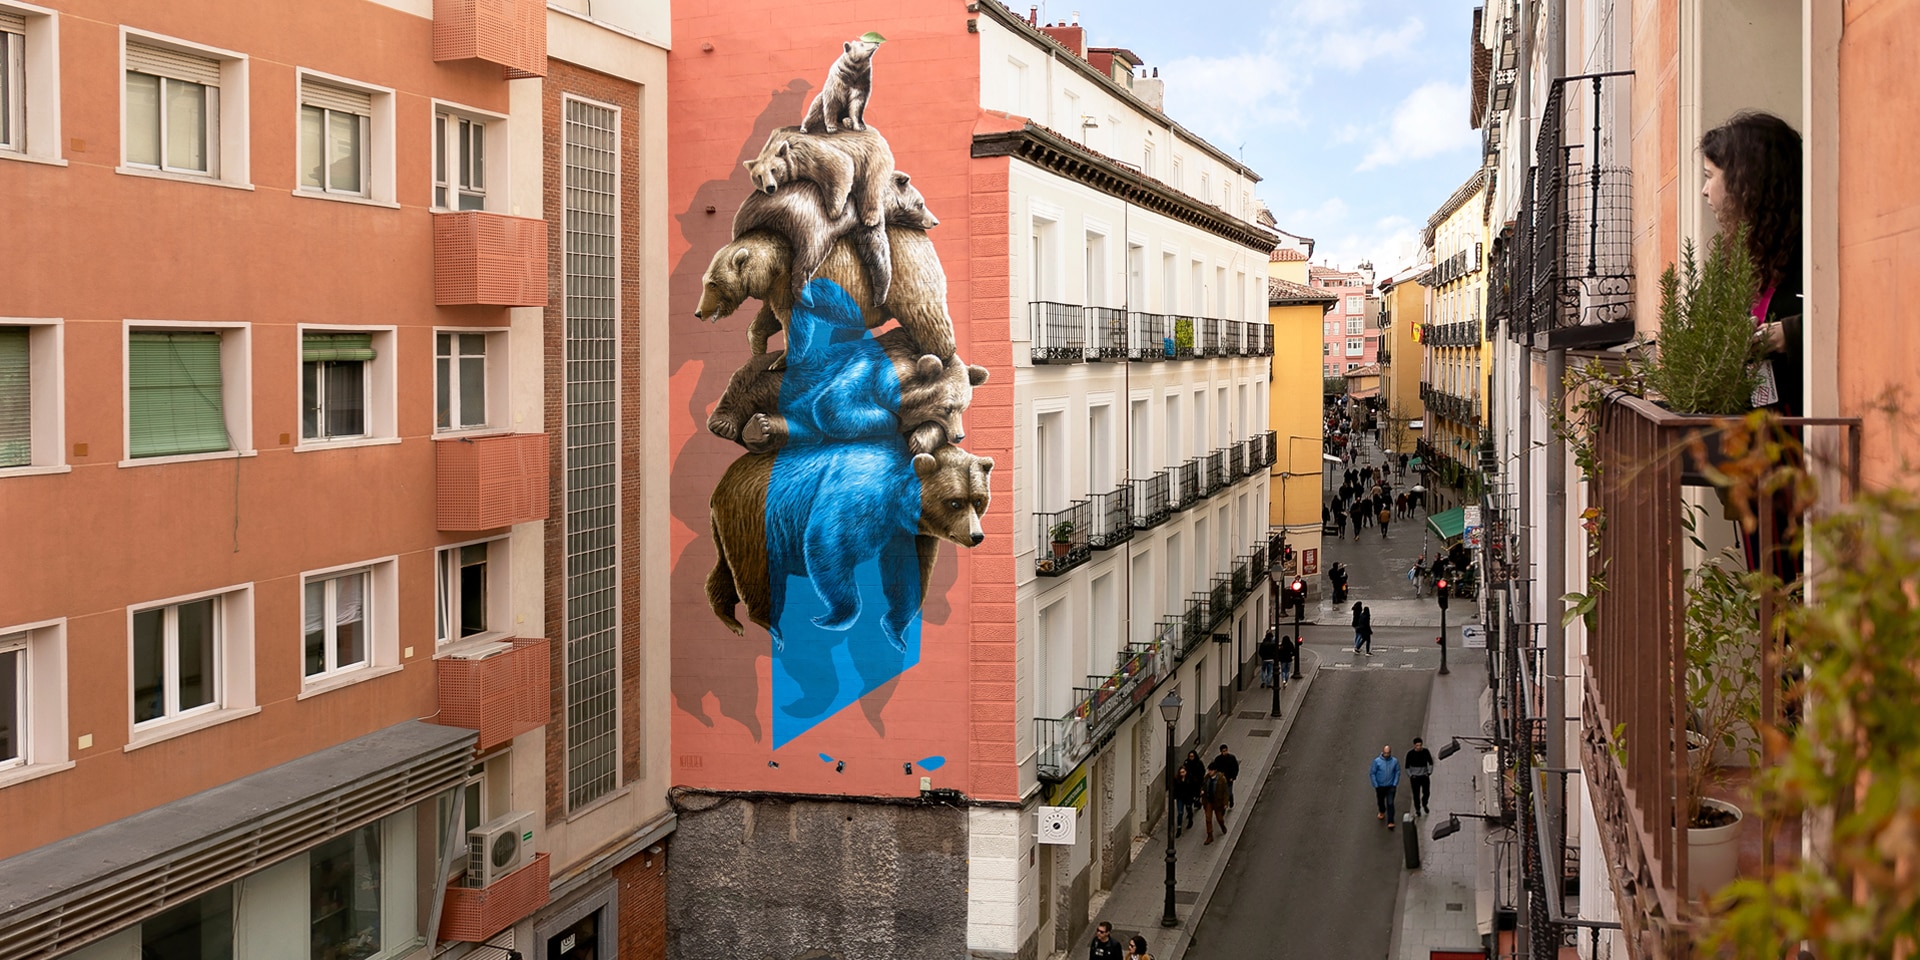 Une peinture murale signée Nevercrew apparaît dans une rue du centre de Madrid. Une femme la regarde par la fenêtre.